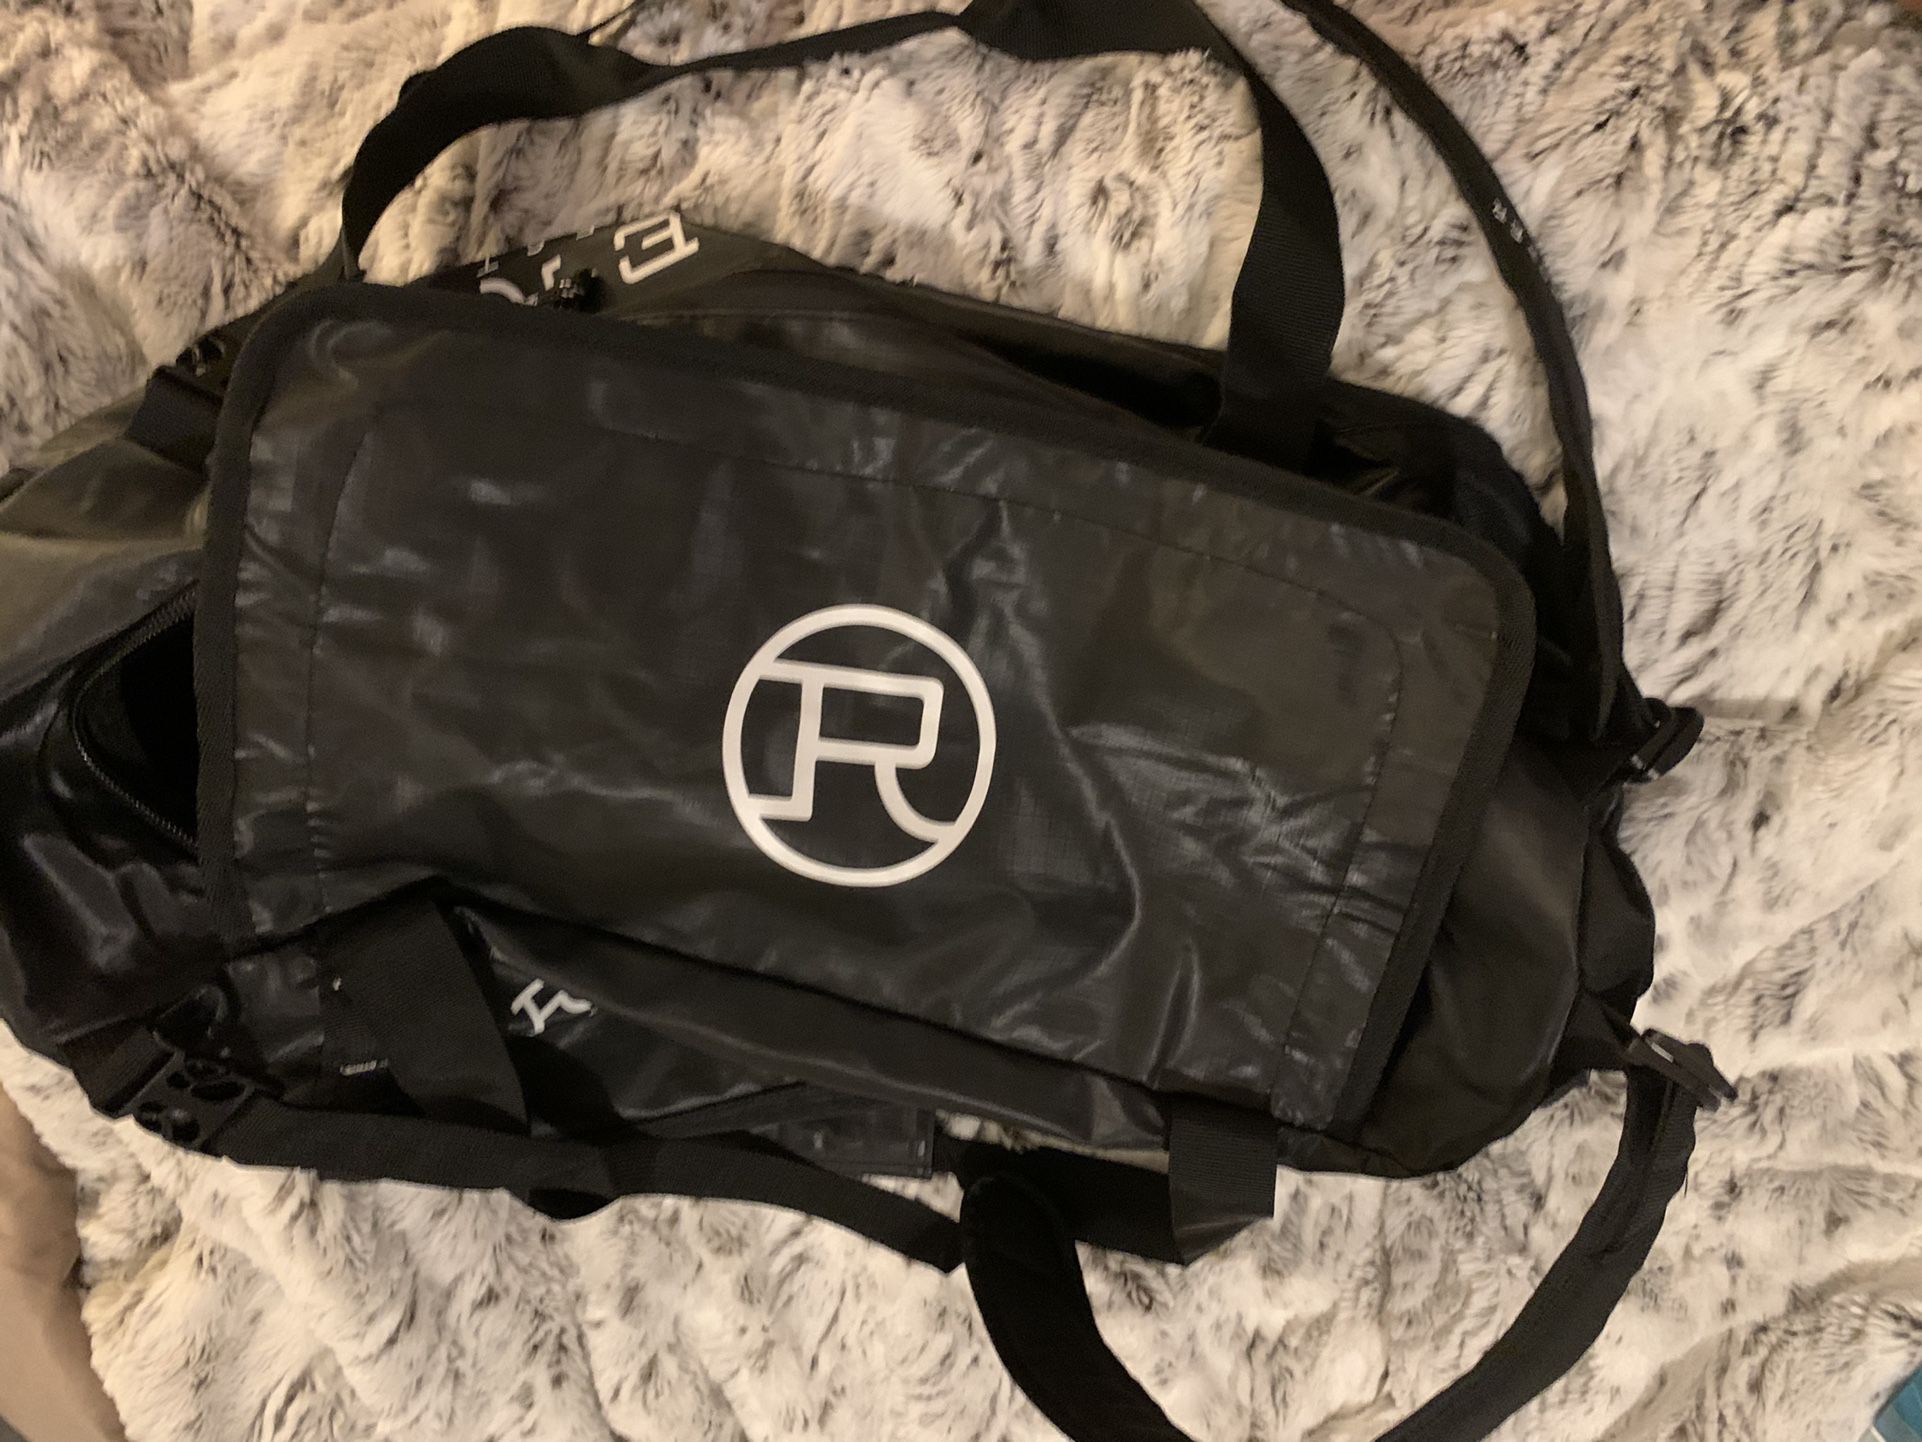 Roper Duffle Bag/backpack 